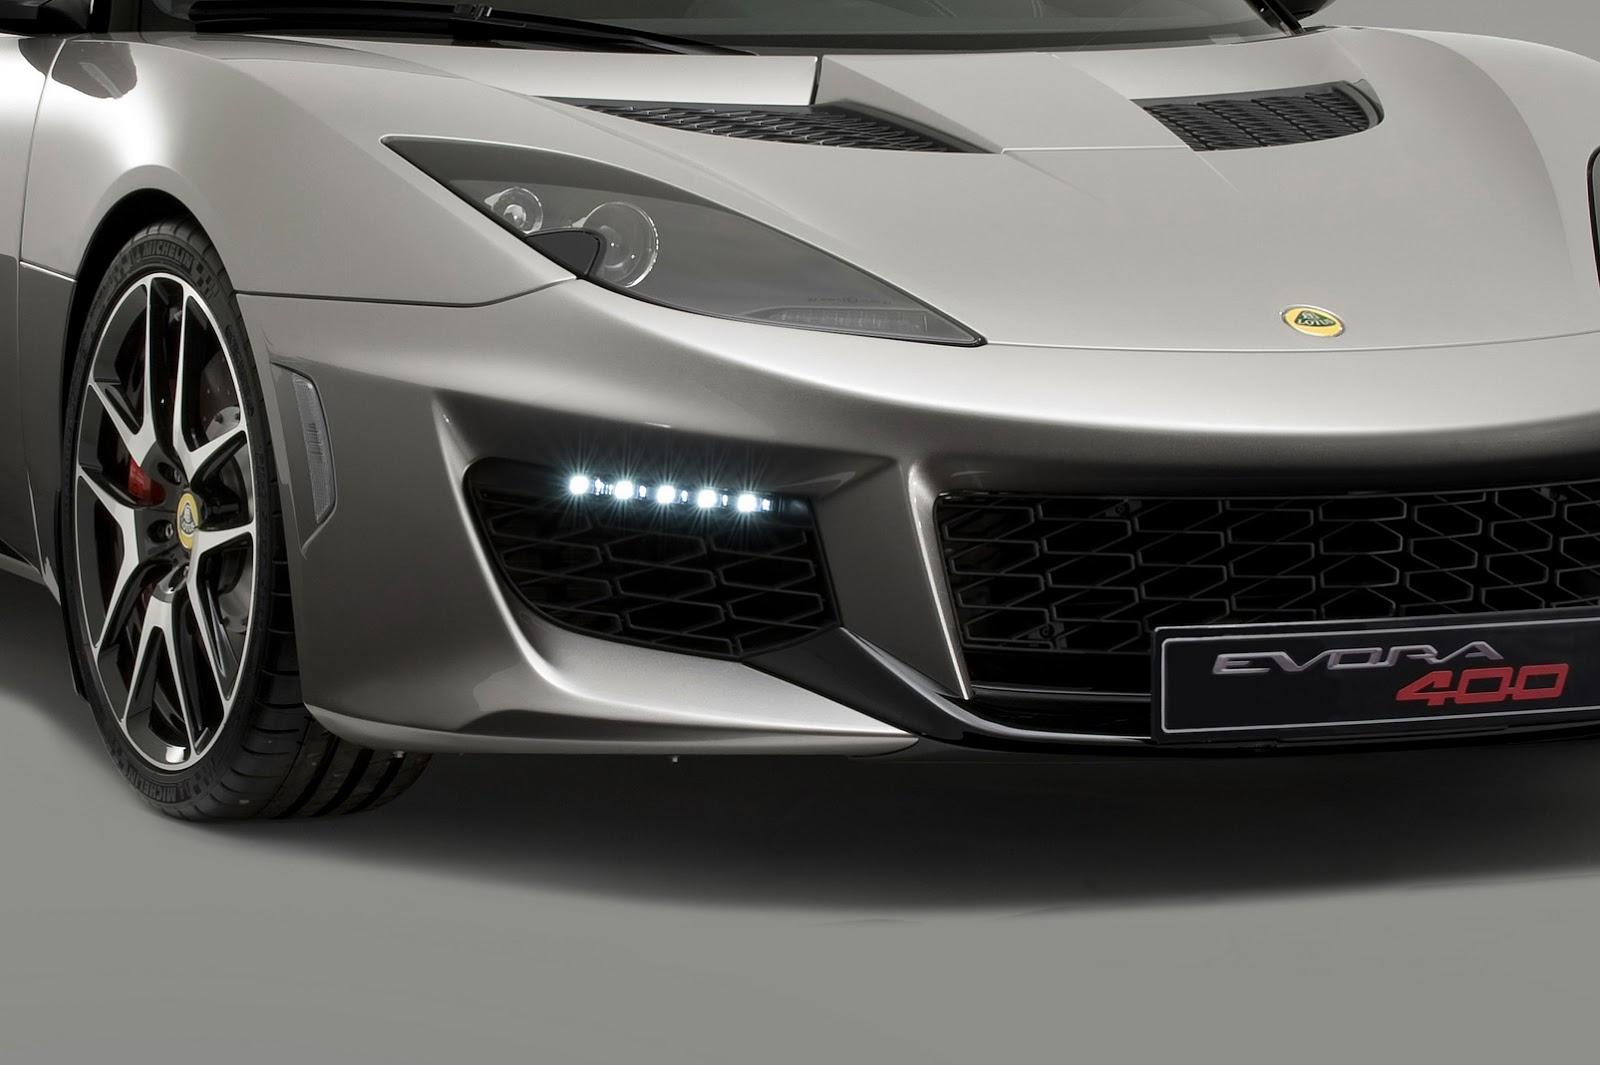 Lotus Evora 400 2015